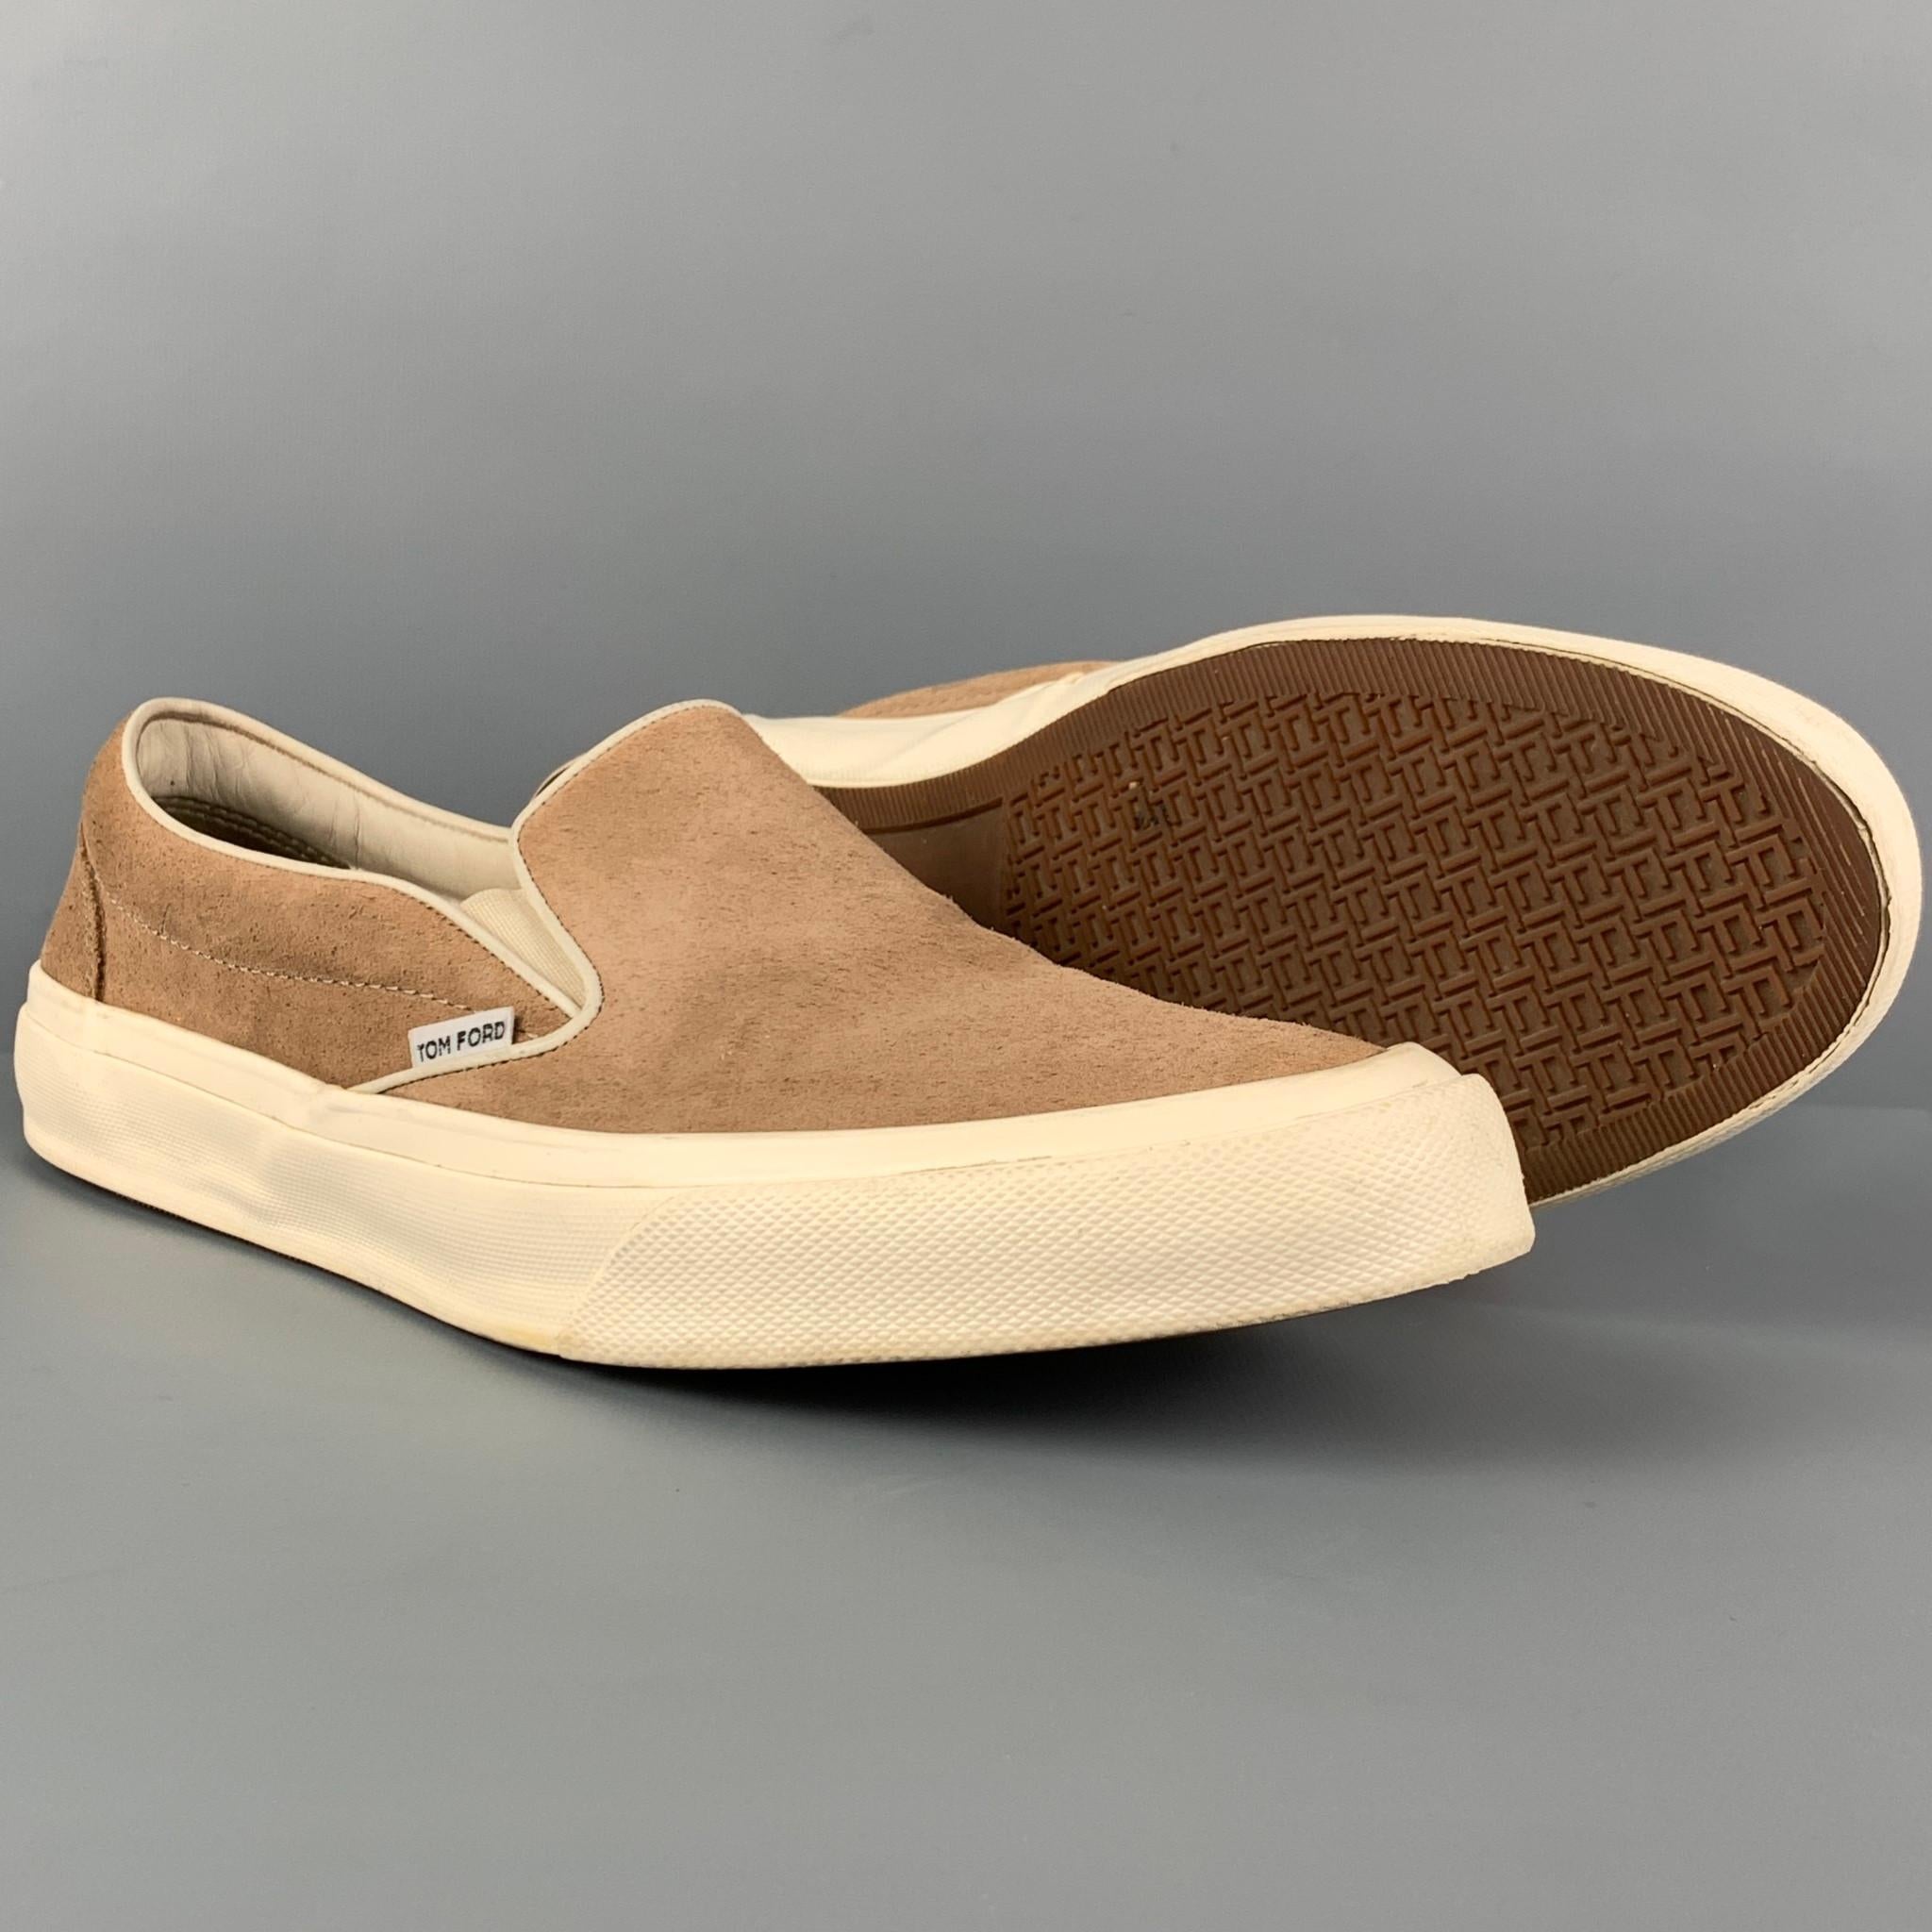 pull-on / slip-on men tom ford shoes